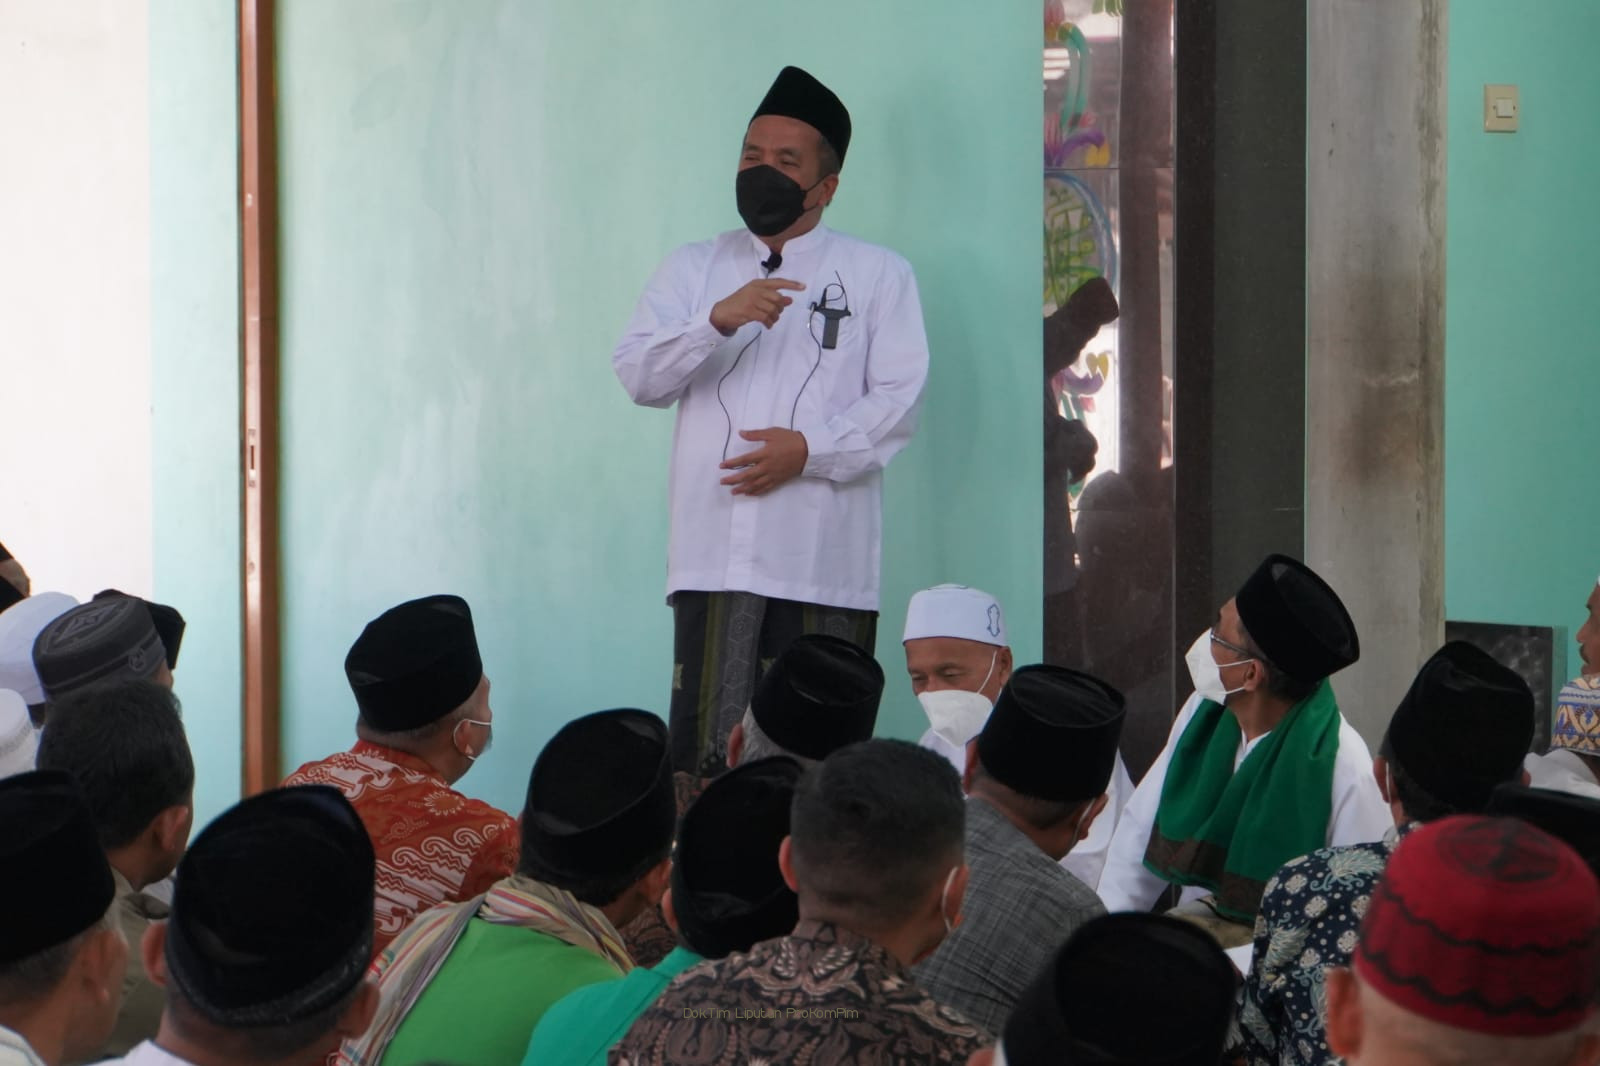 Plh Bupati Pasuruan, Gus Mujib Himbau Masyarakat Ramaikan Malam Takbiran Idul Adha Cukup di Kampung Sendiri 